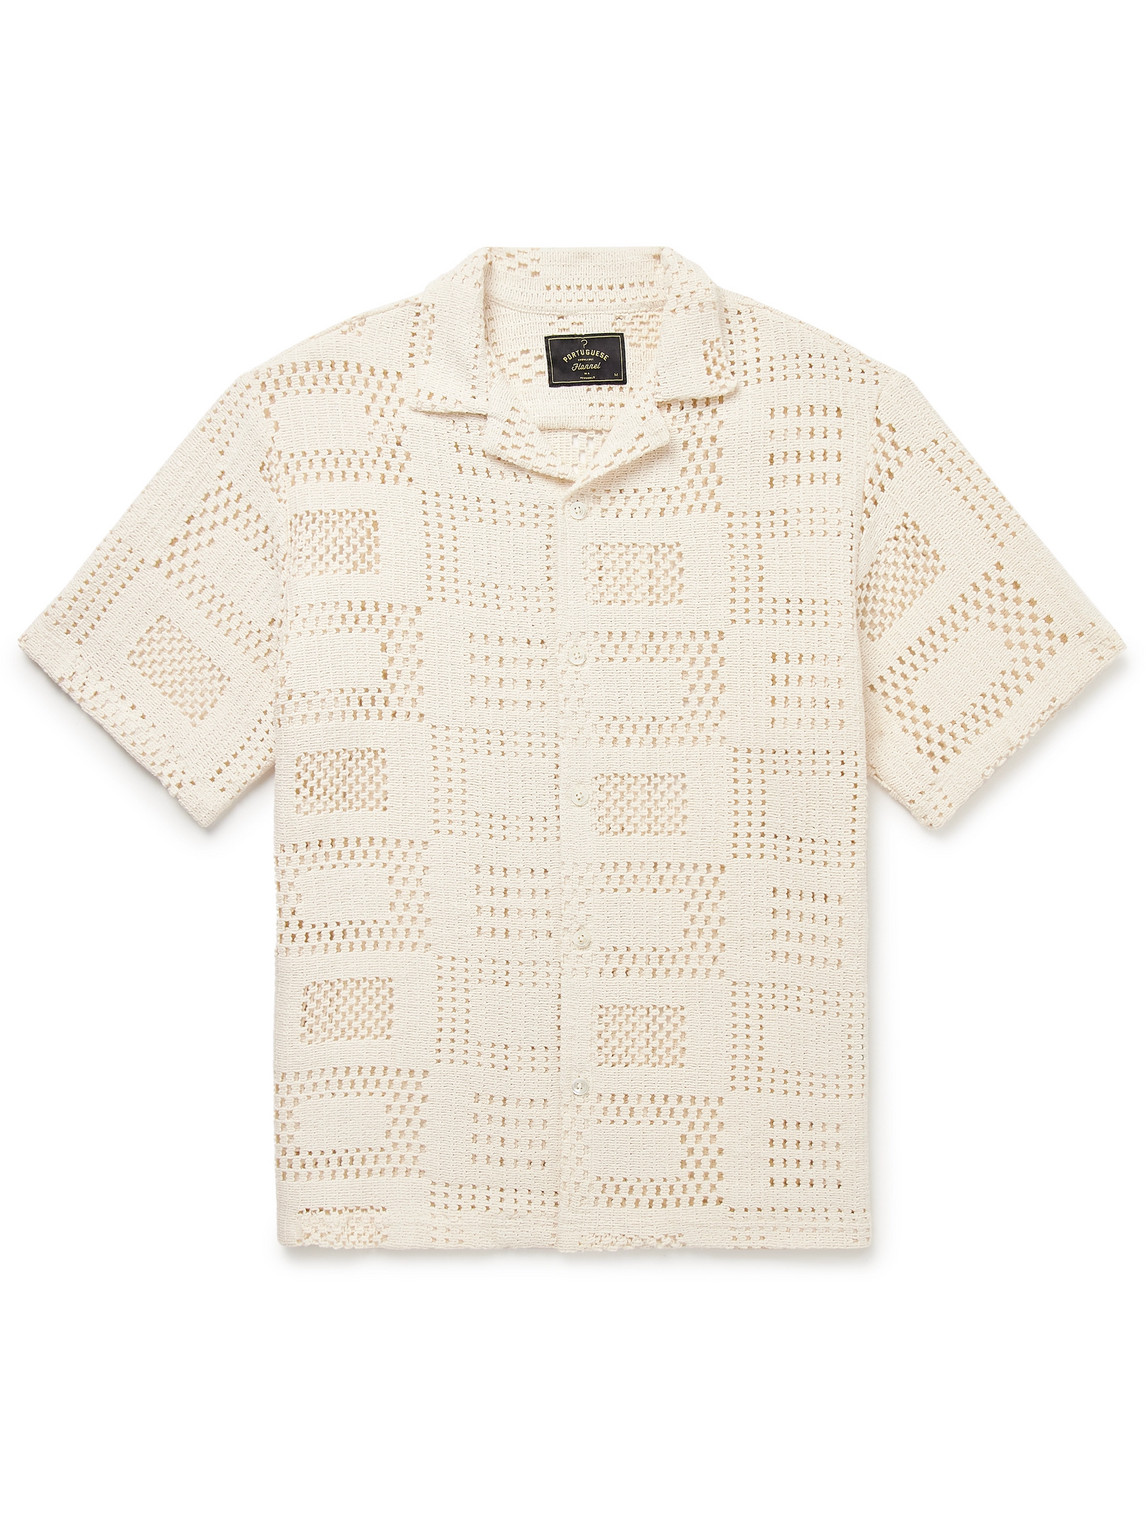 Camp-Collar Crocheted Cotton-Blend Shirt